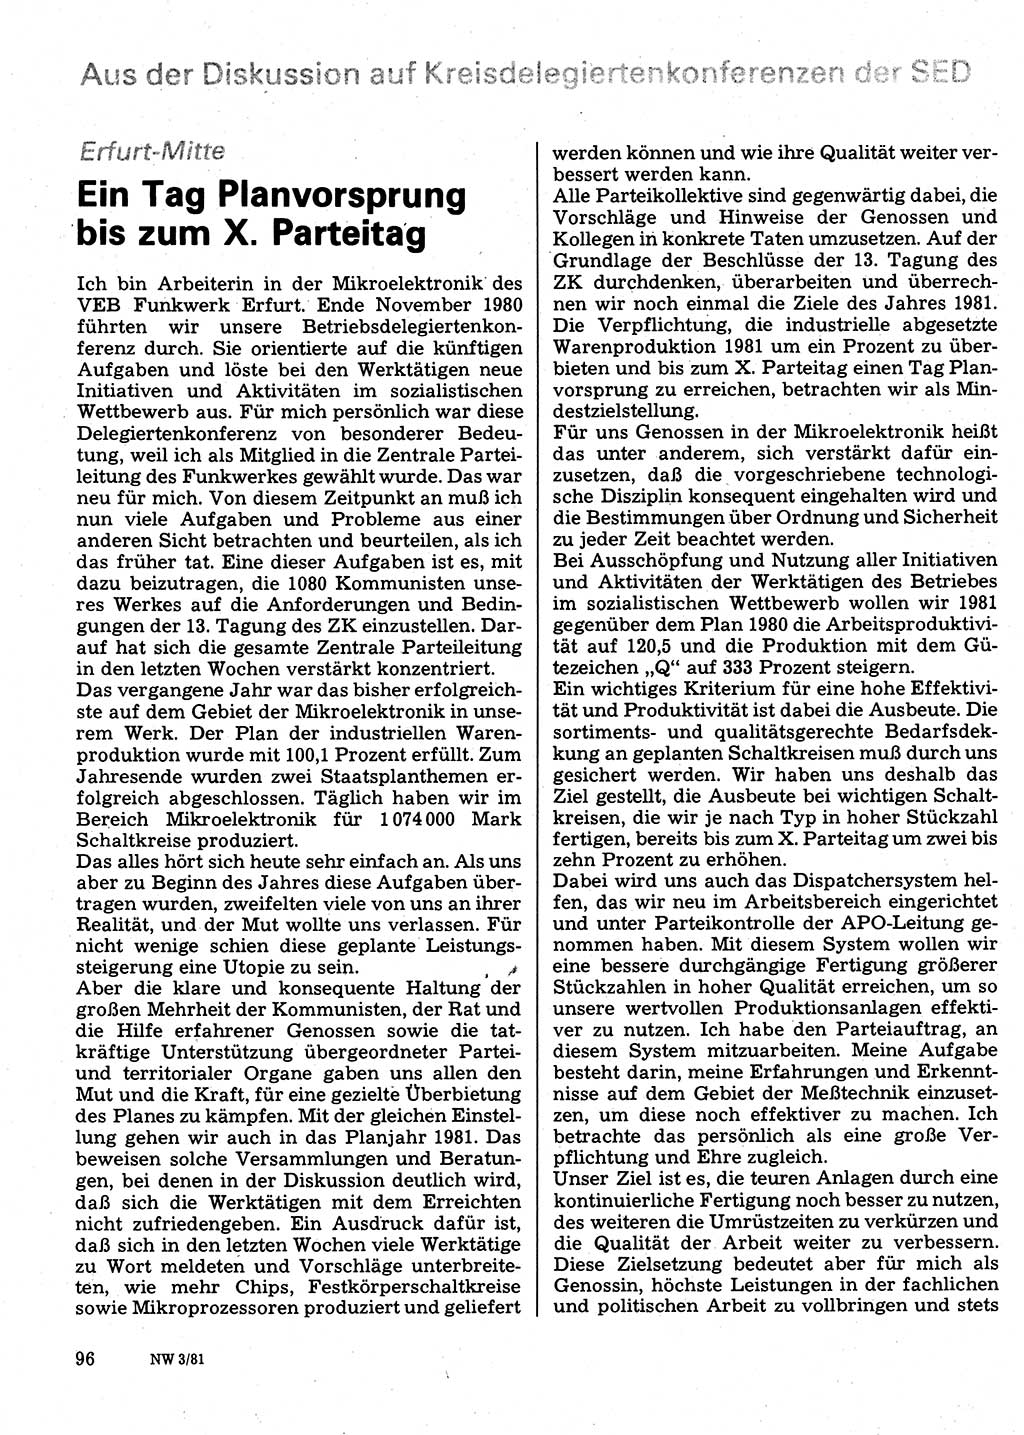 Neuer Weg (NW), Organ des Zentralkomitees (ZK) der SED (Sozialistische Einheitspartei Deutschlands) für Fragen des Parteilebens, 36. Jahrgang [Deutsche Demokratische Republik (DDR)] 1981, Seite 96 (NW ZK SED DDR 1981, S. 96)